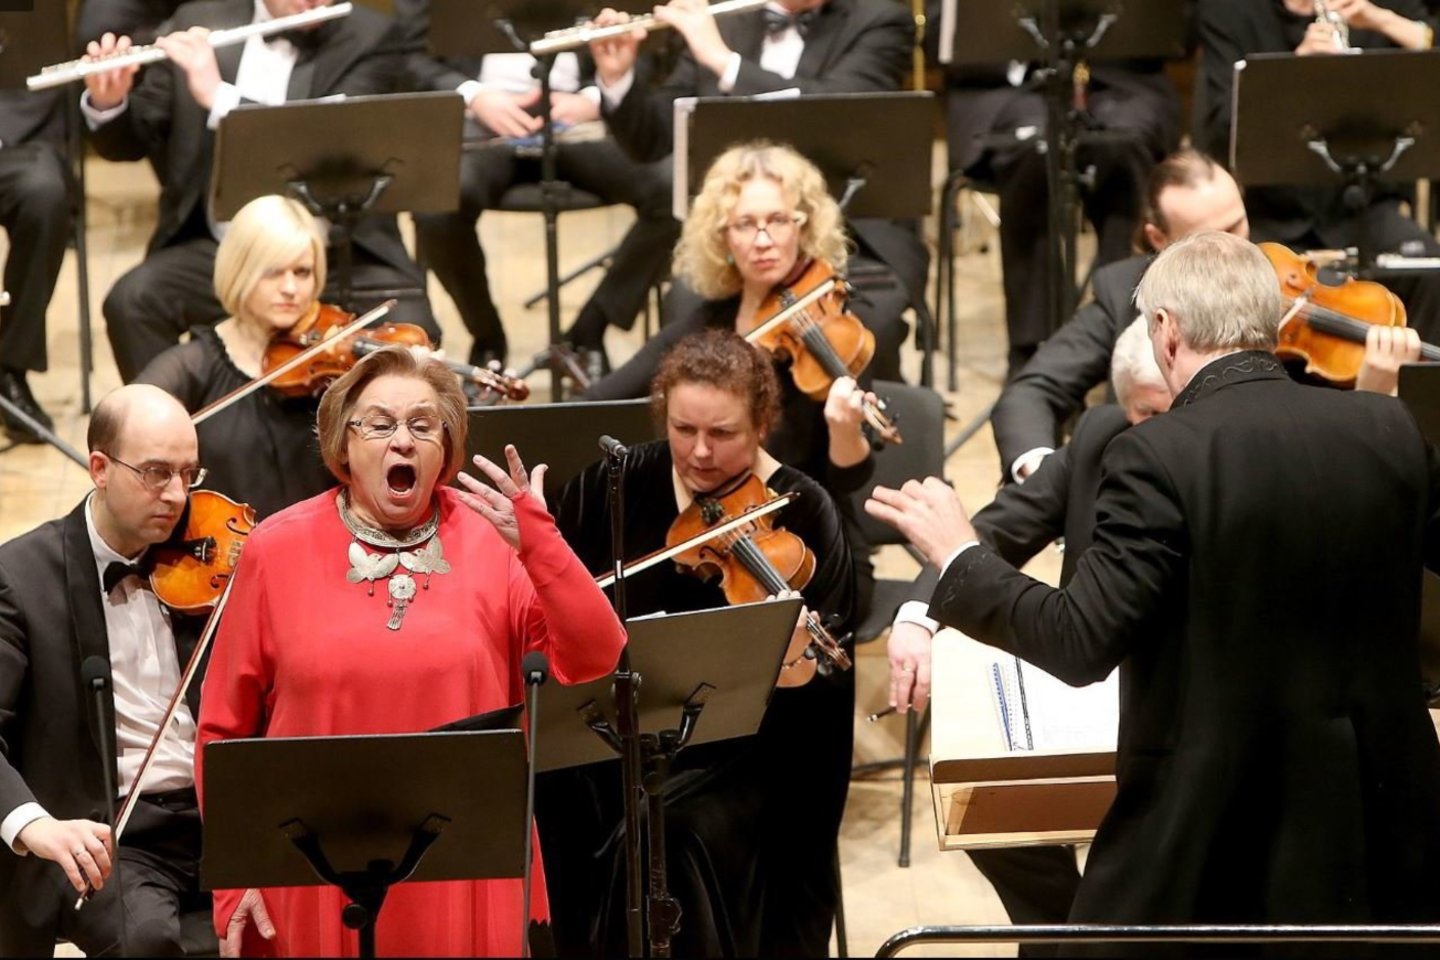 Irena Milkevičiūtė pasirodys kartu su Lietuvos valstybiniu simfoniniu  orkestru, diriguojamu meno vadovo ir vyr. dirigento Gintaro  Rinkevičiaus,<br>R.Danisevičiaus nuotr.